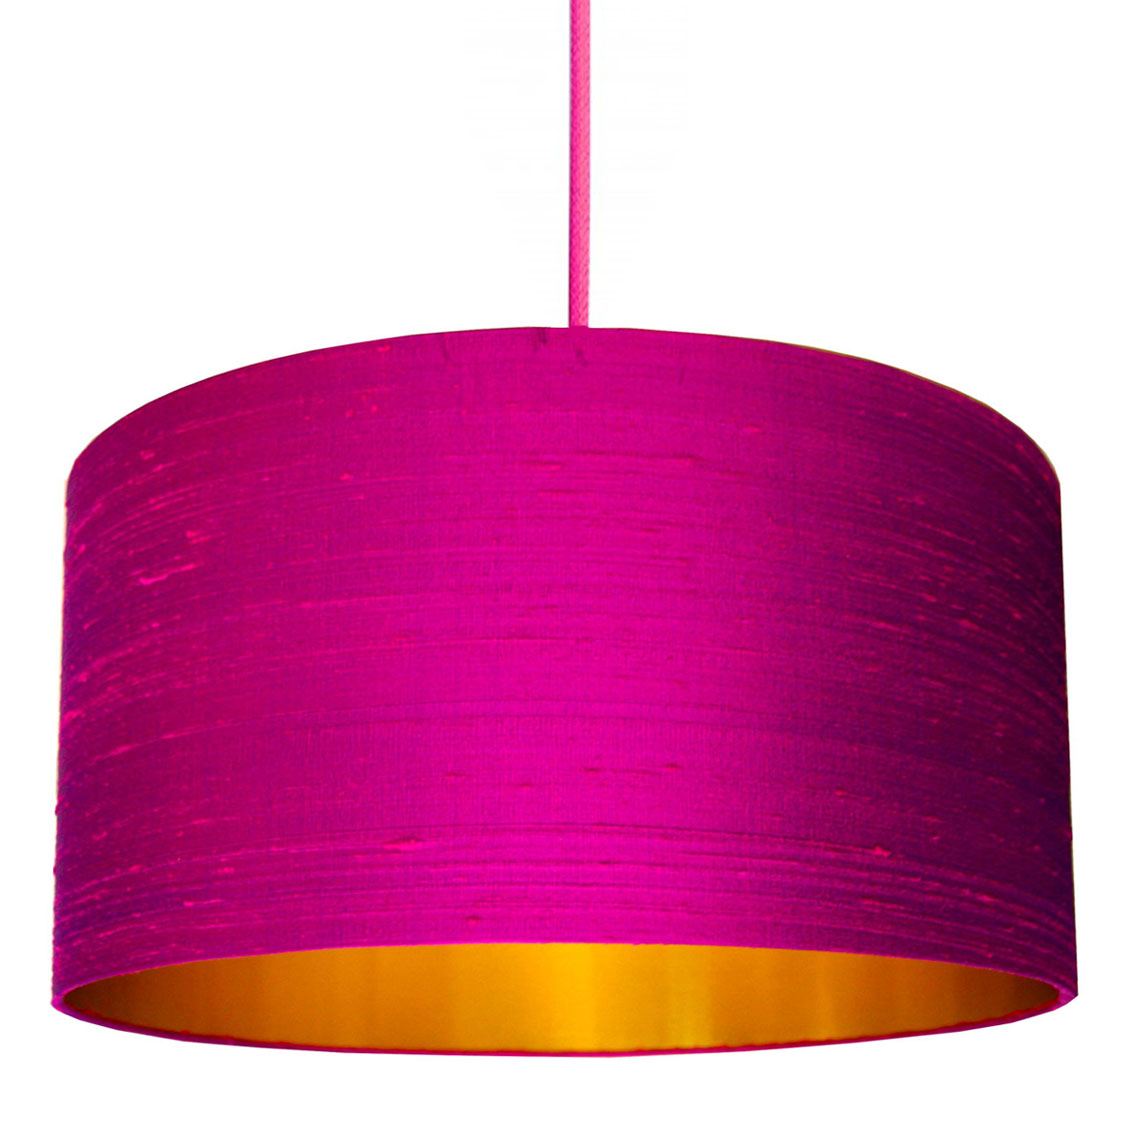 Hot Pink Silk Lampshade With Gold, Hot Pink Lamp Shades Uk